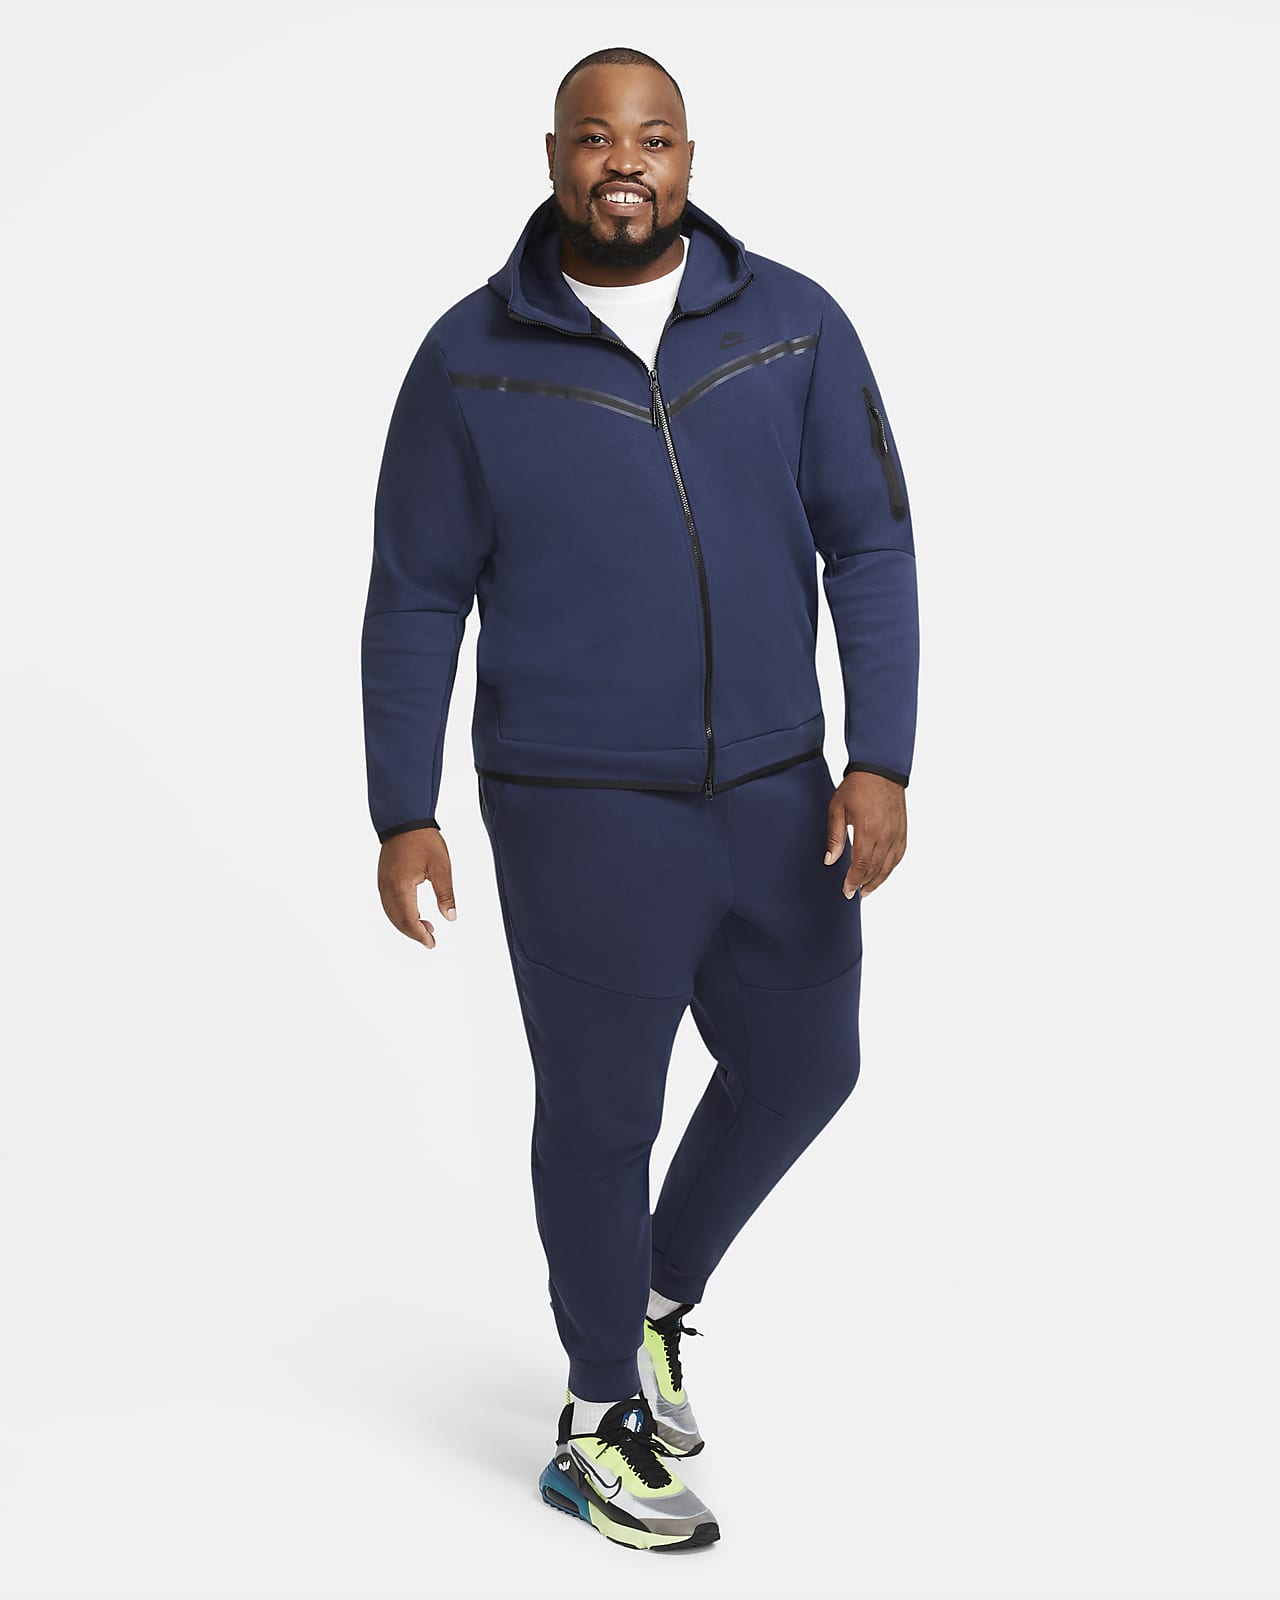 Nike Sportswear Men's Tech Fleece Pants